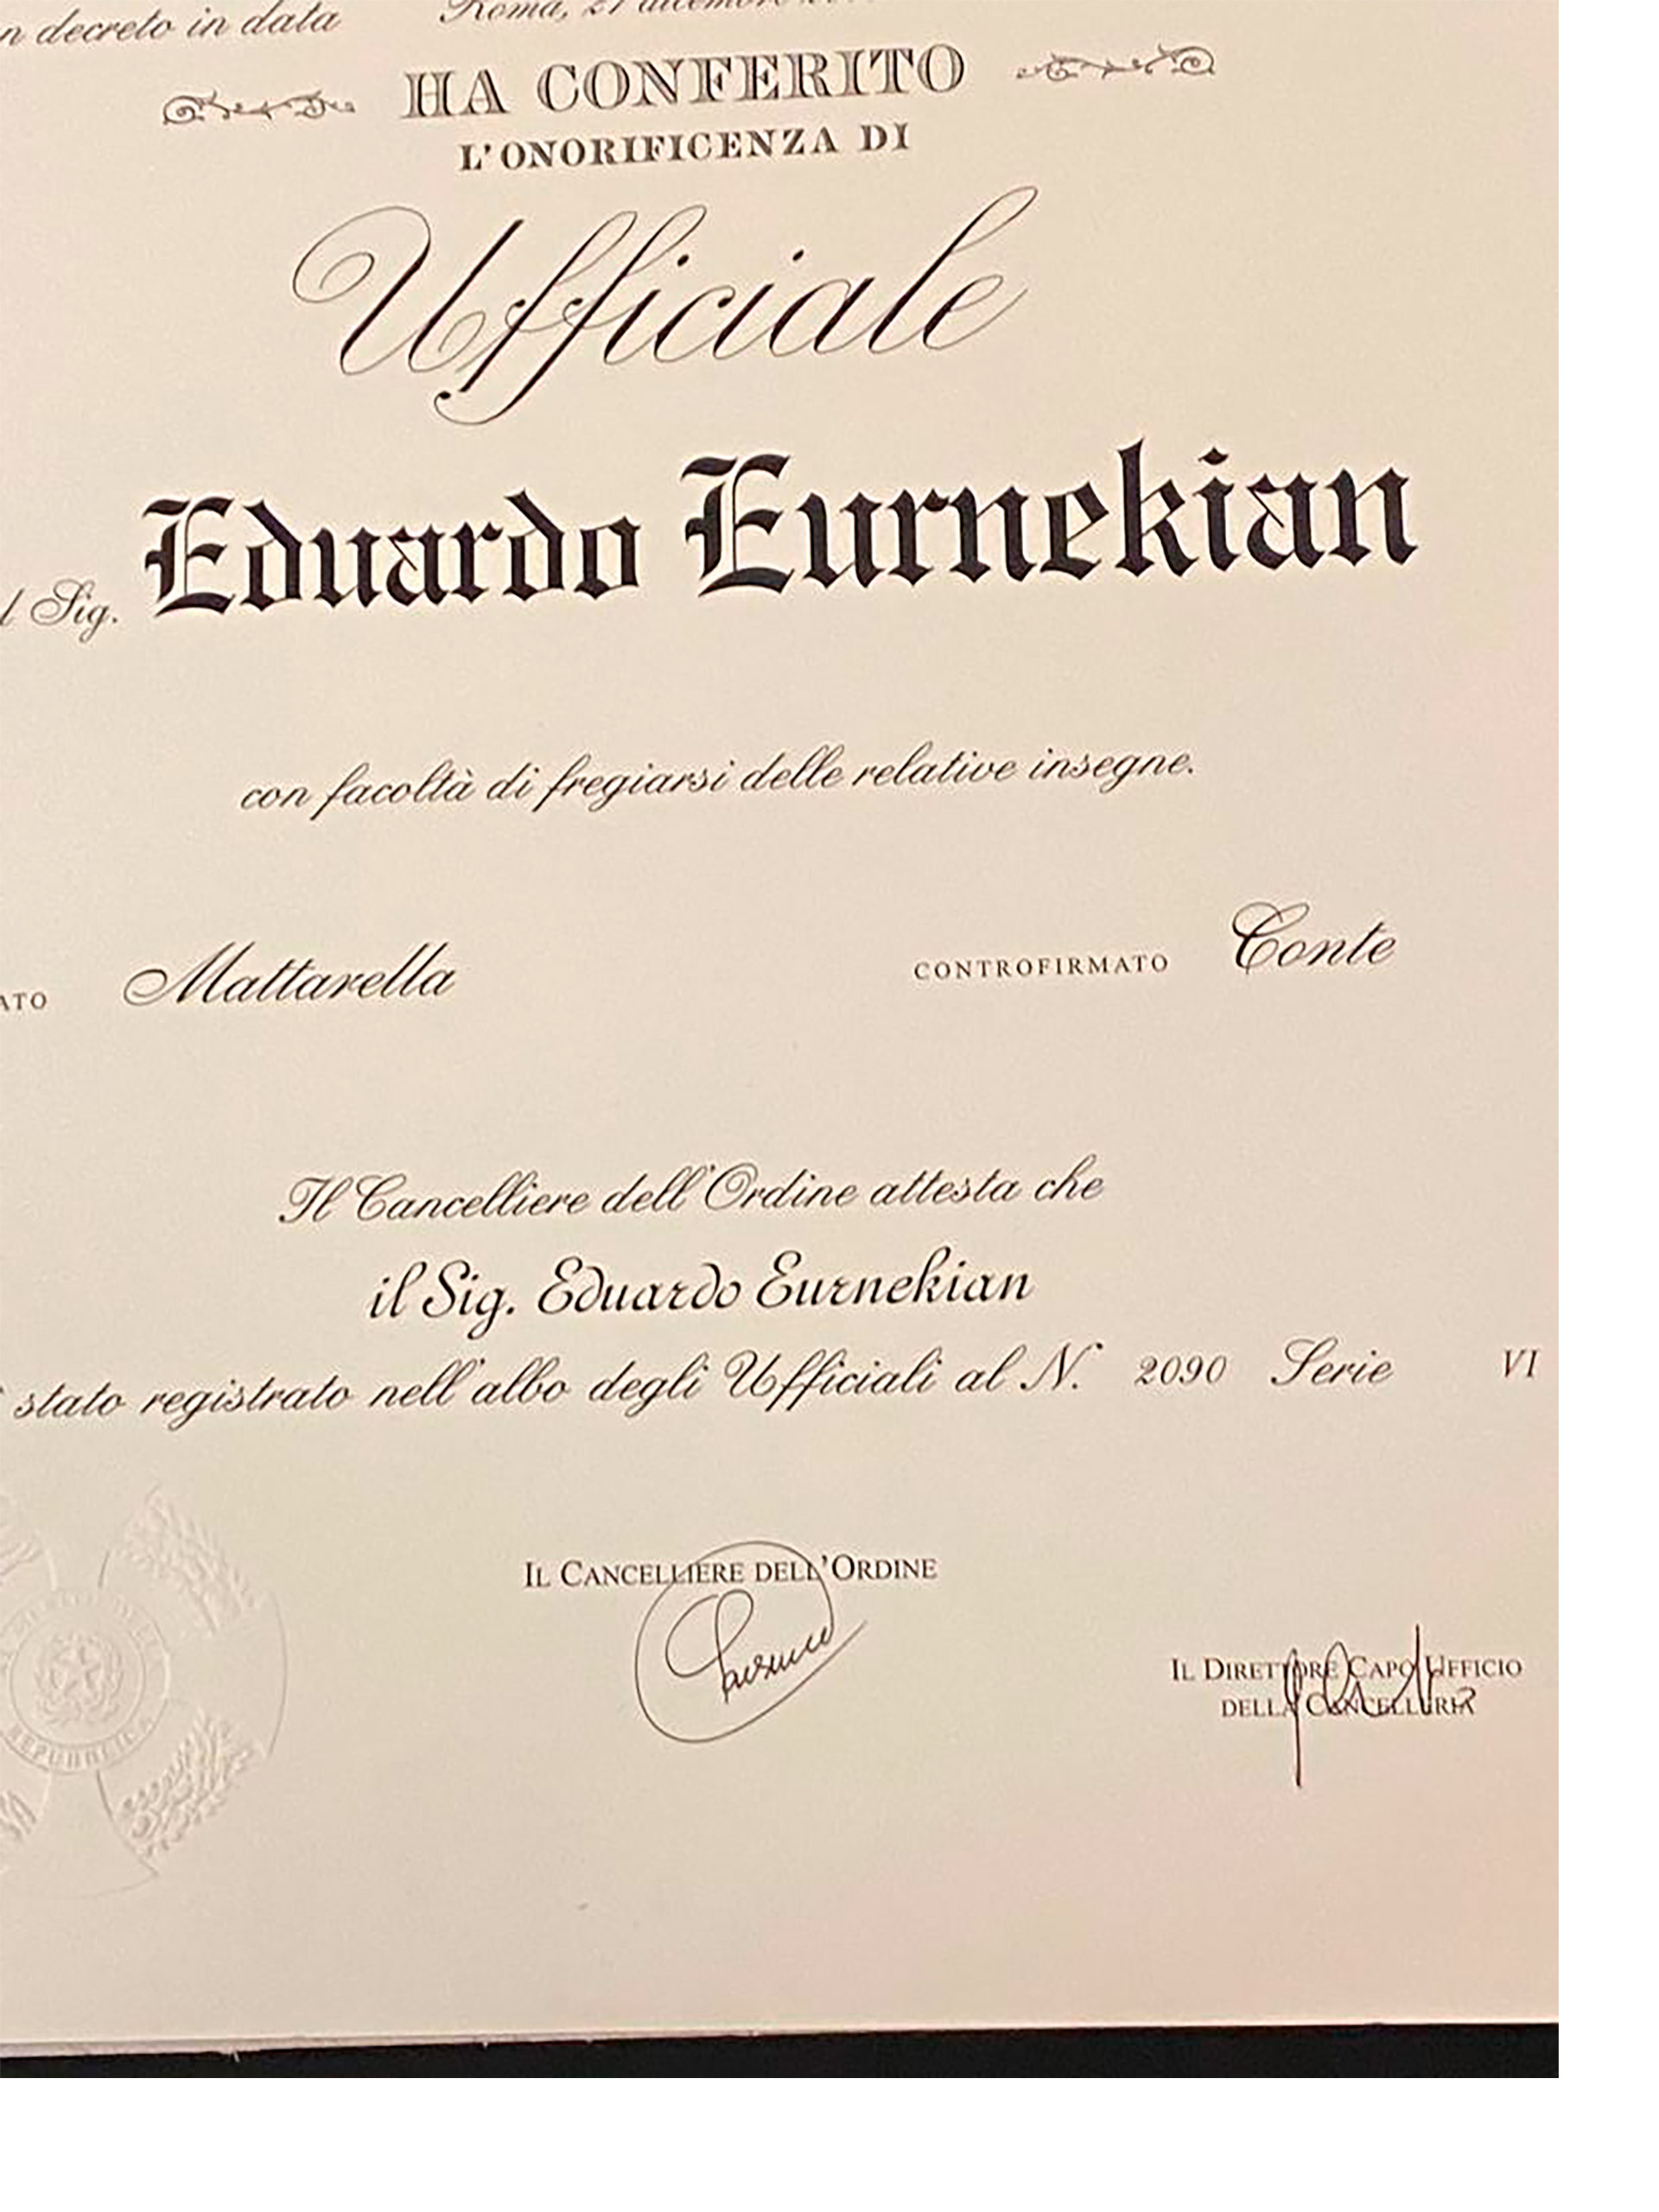 El diploma por la Orden al Merito de la República Italiana